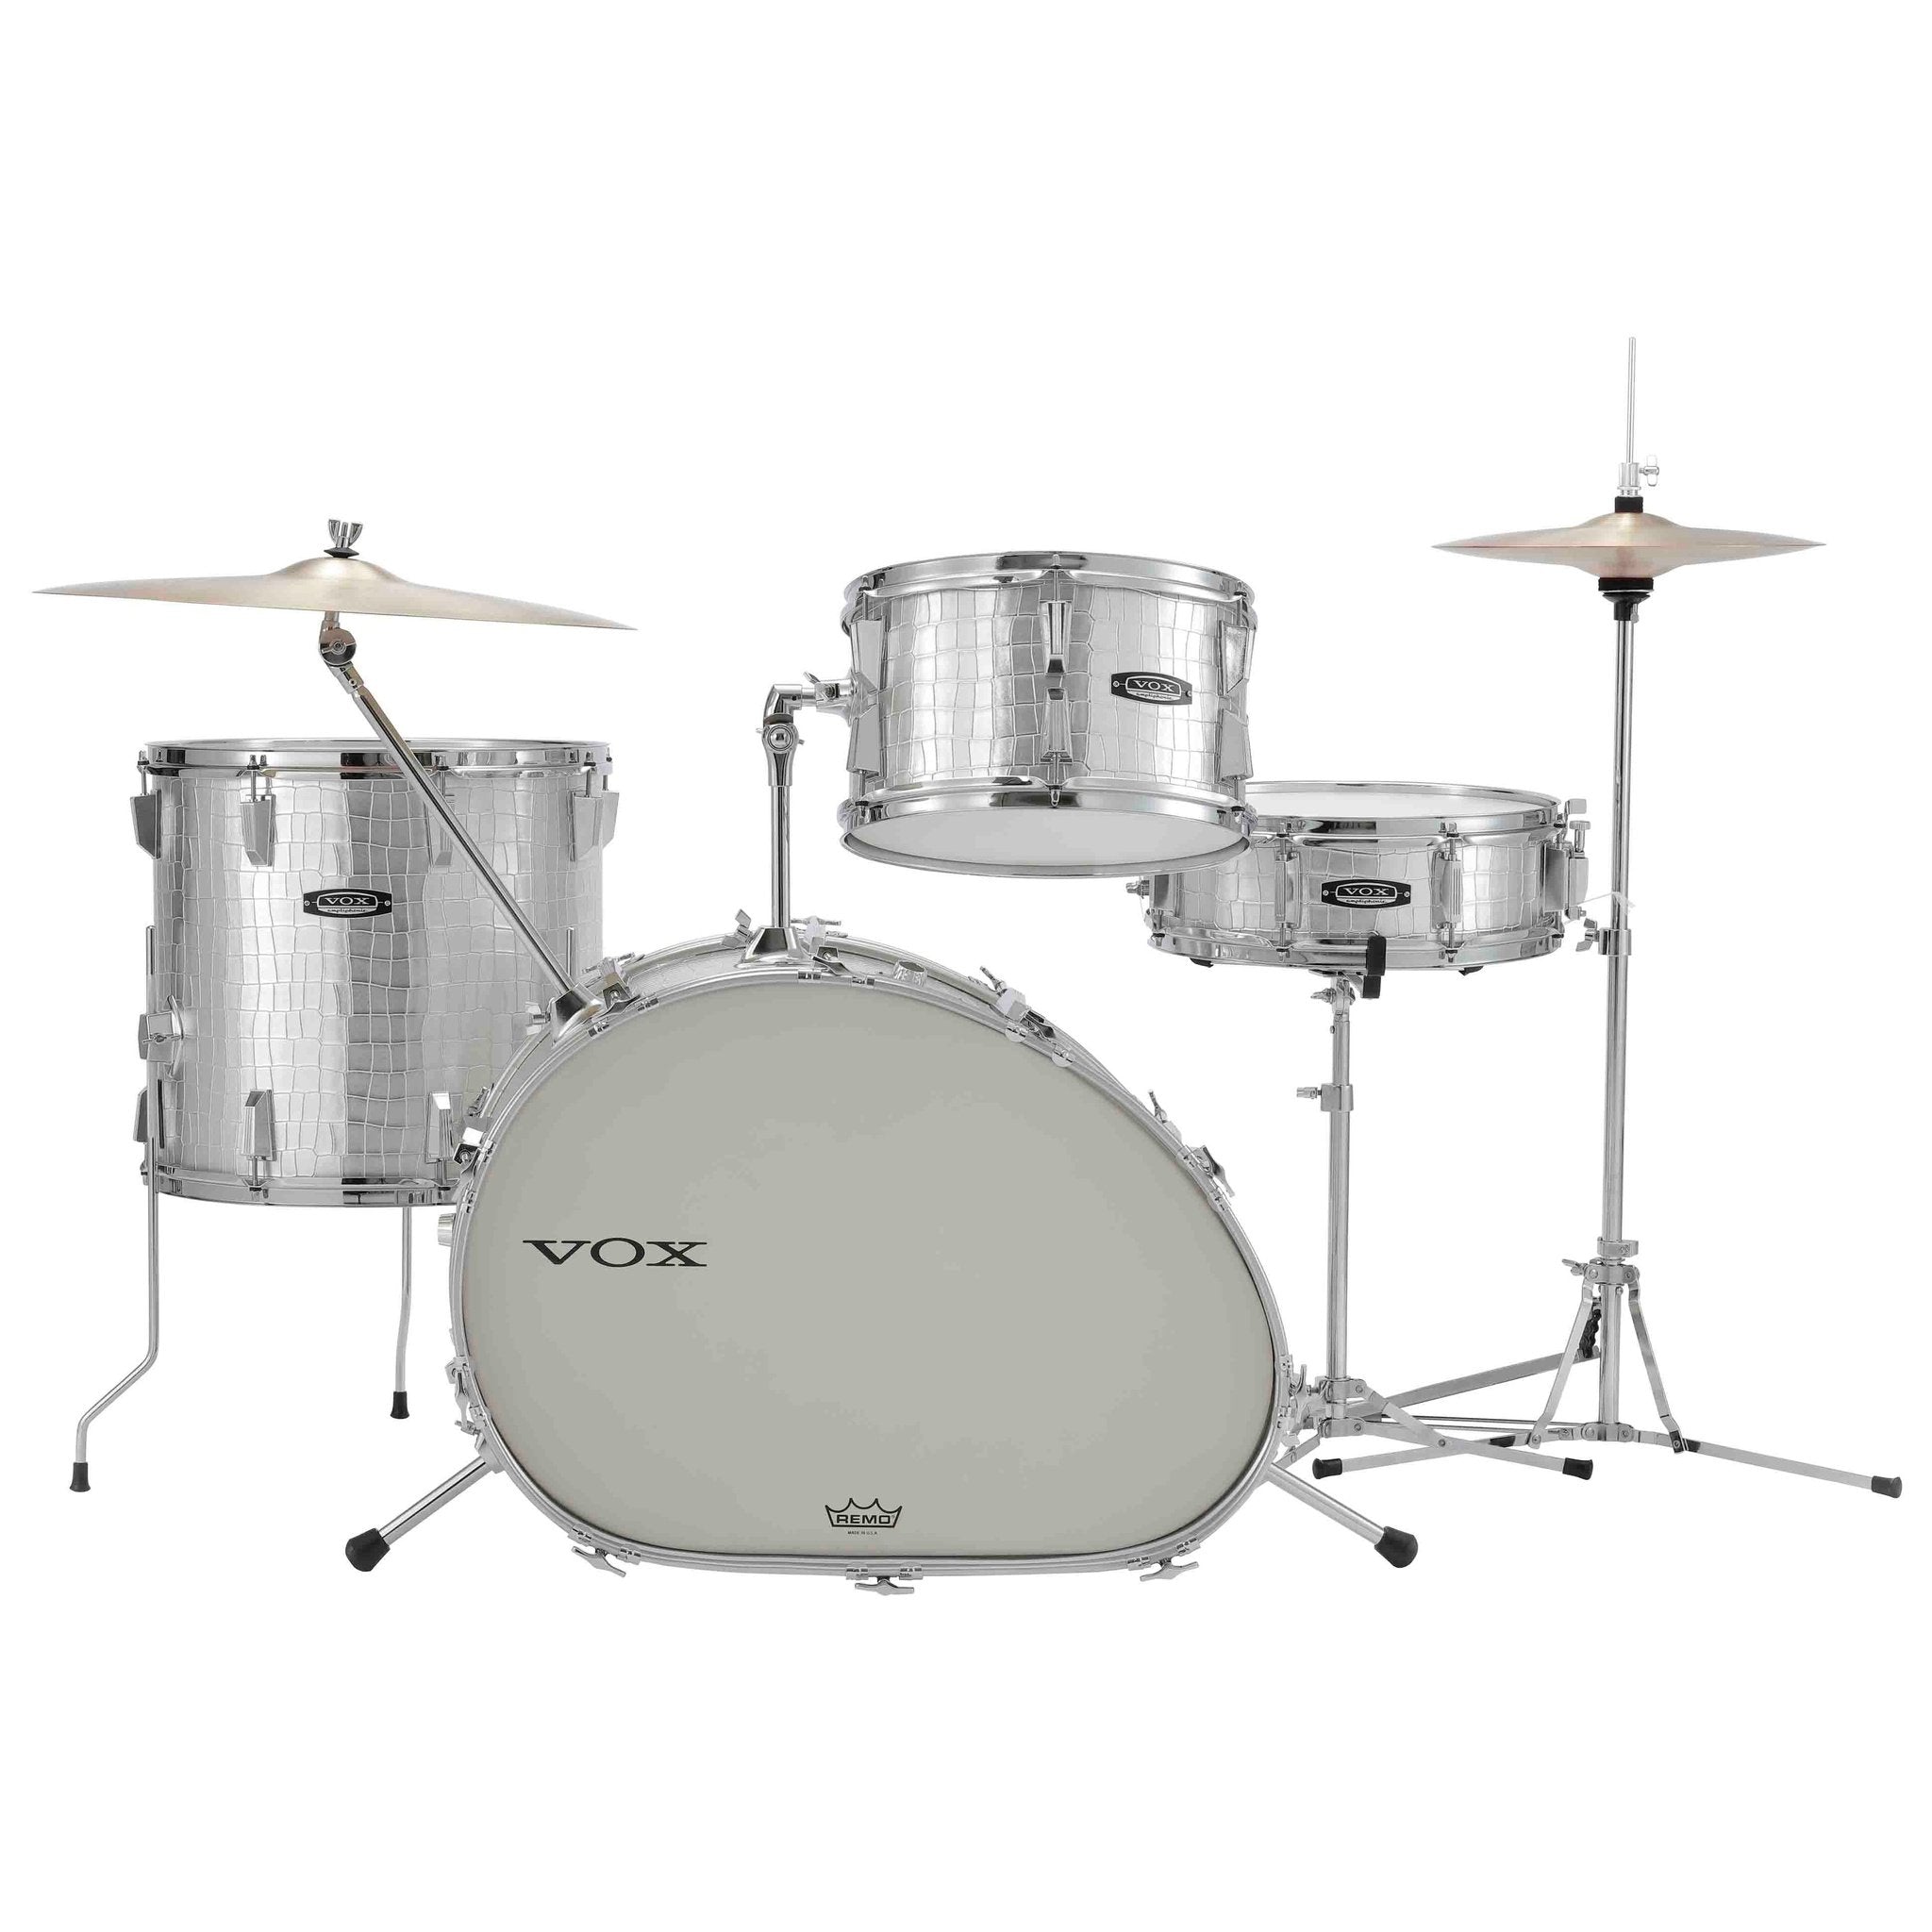 Vox Telstar Drum Kit 1